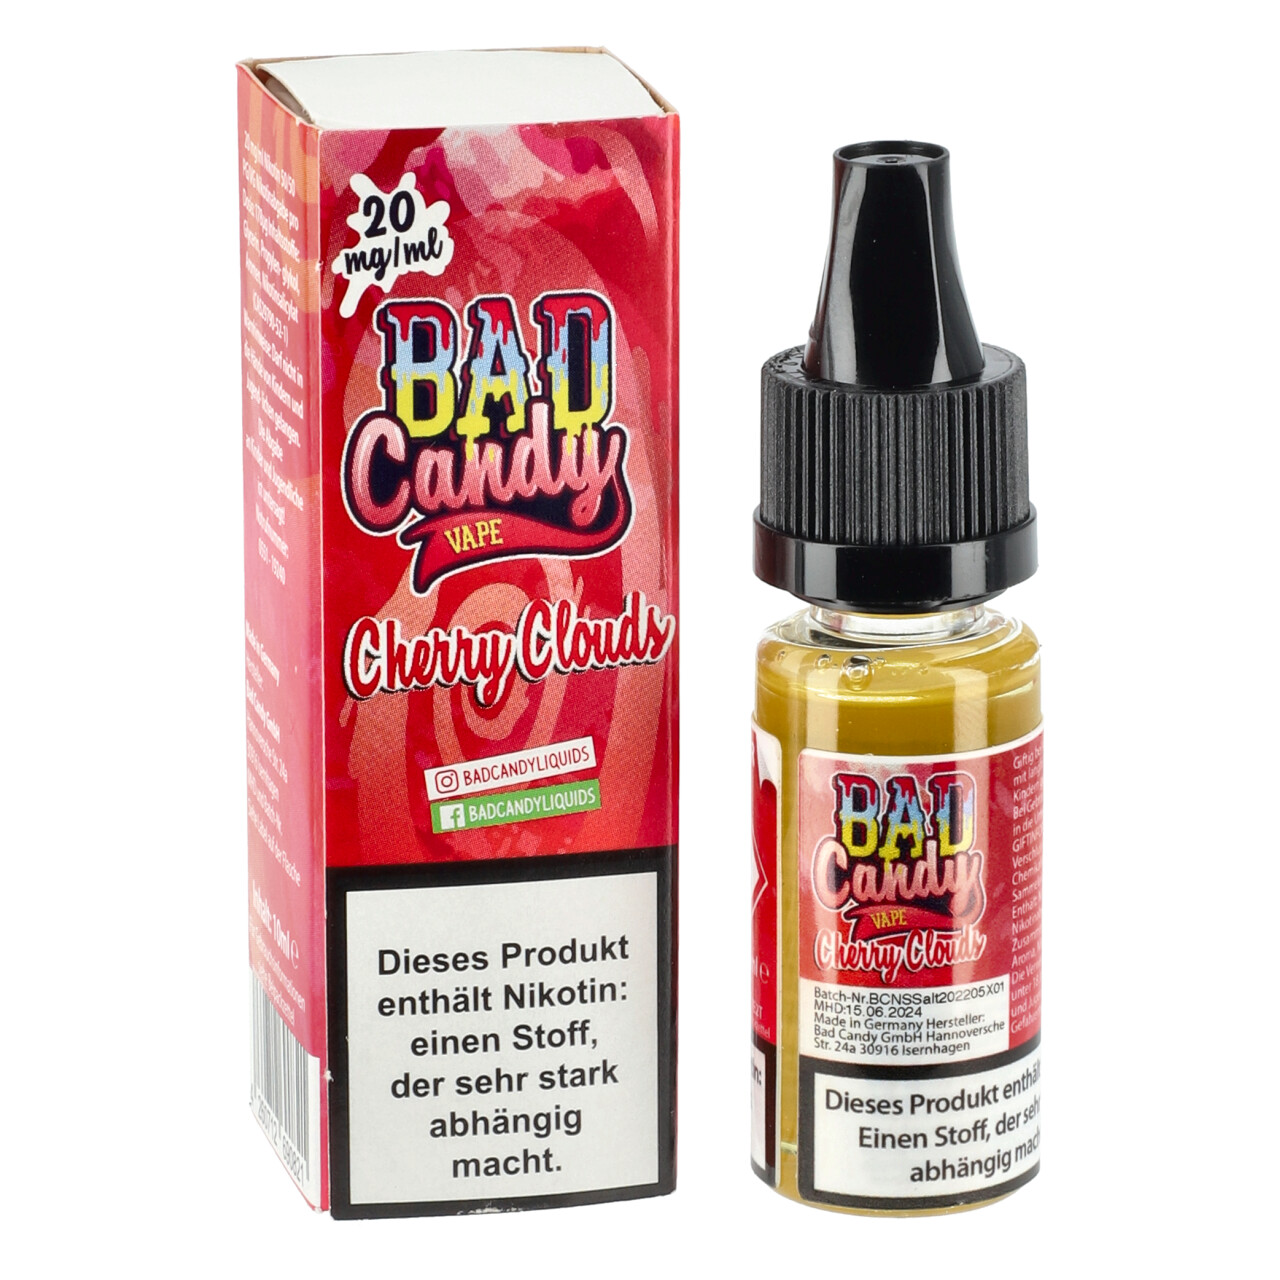 Bad Candy kühle Kirsche Zitrone Limette (Cherry Clouds) Nikotinsalz Liquid, 10ml